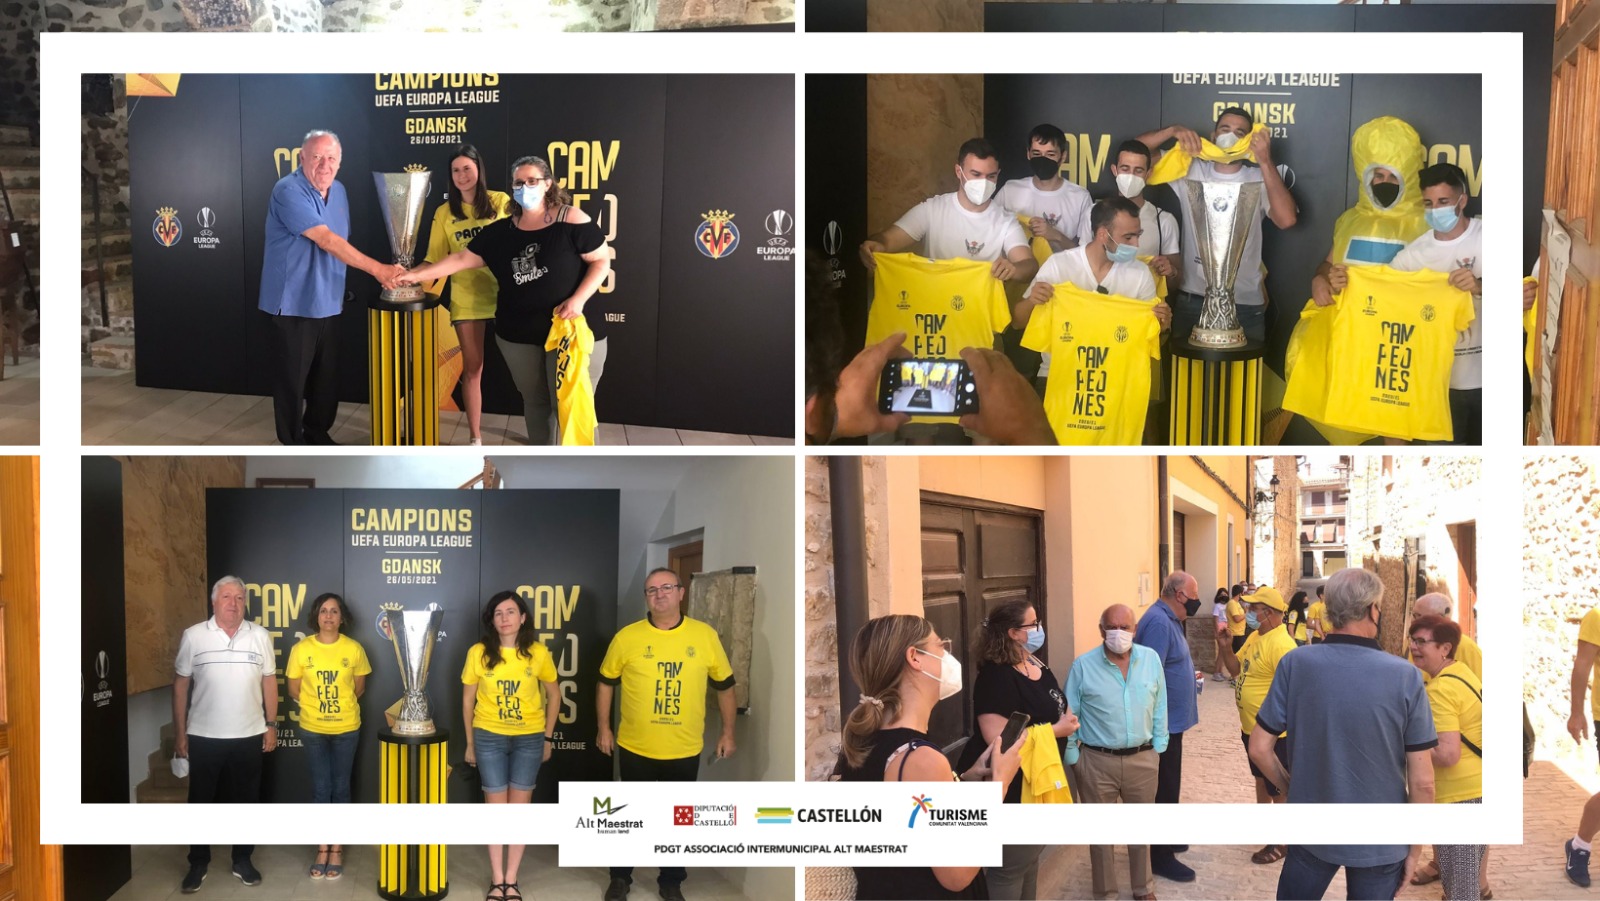 La copa de la Europa League del Villarreal CF, expuesta y admirada en Alt Maestrat